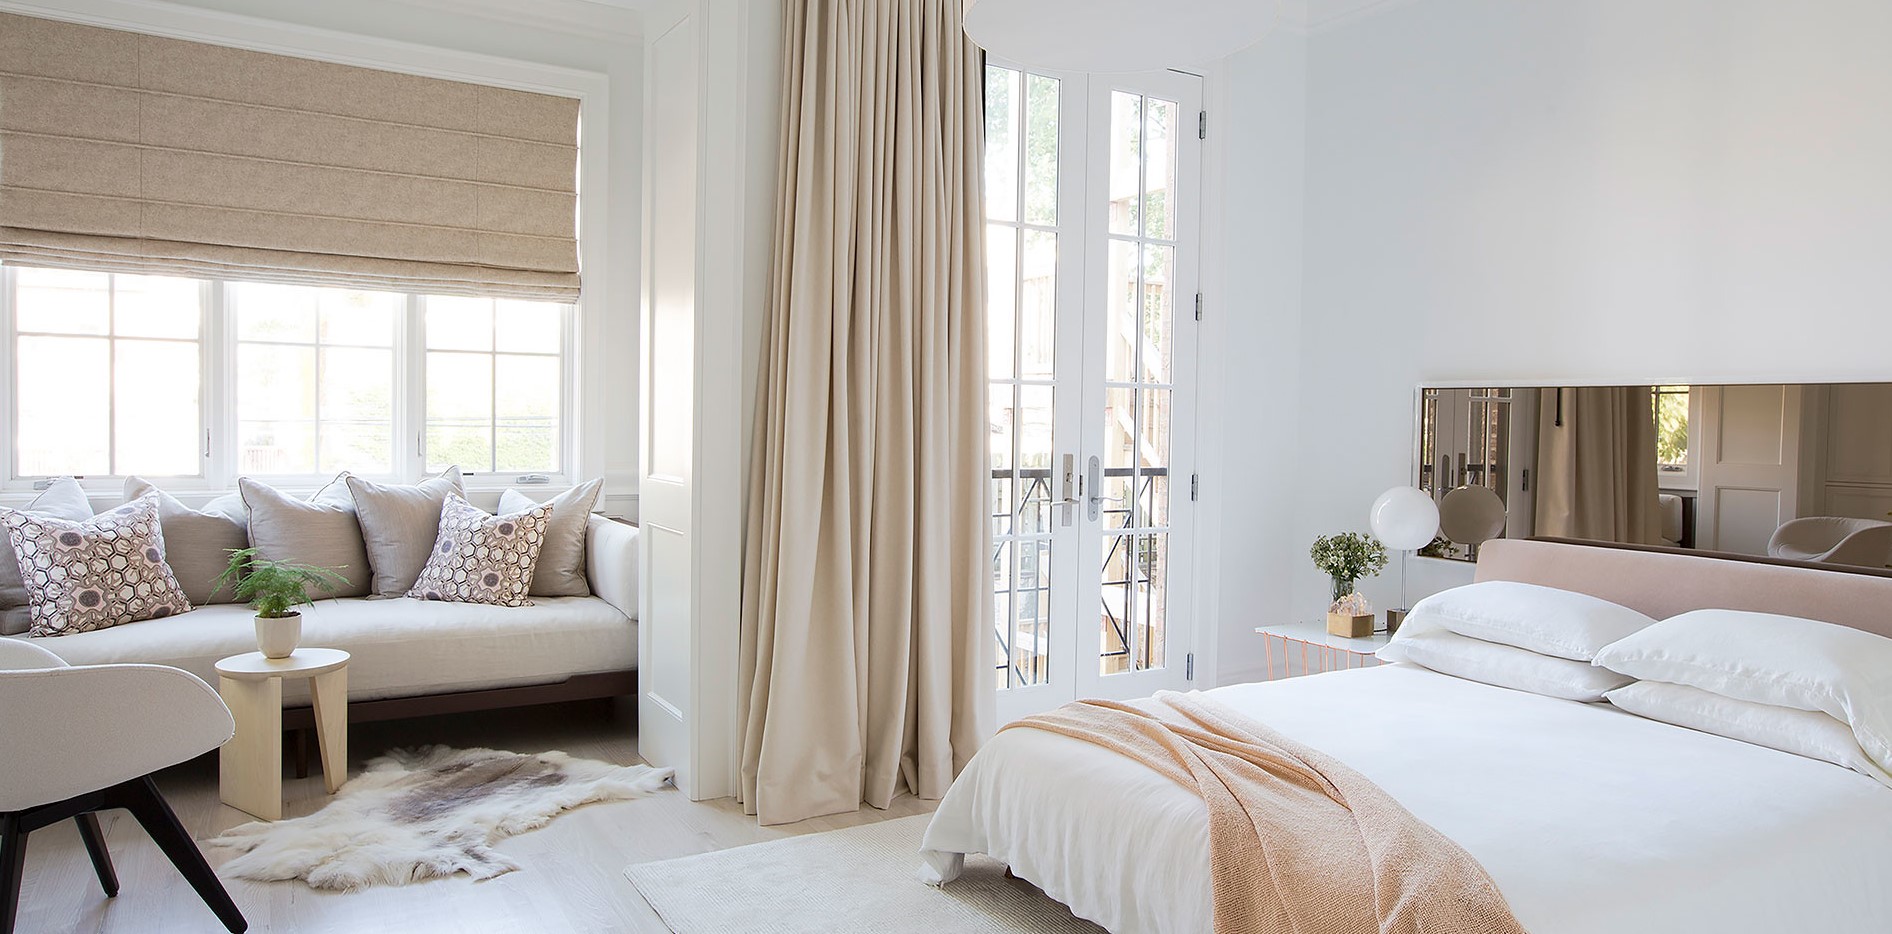 Возле окна в спальне можно поставить небольшой диван для отдыха